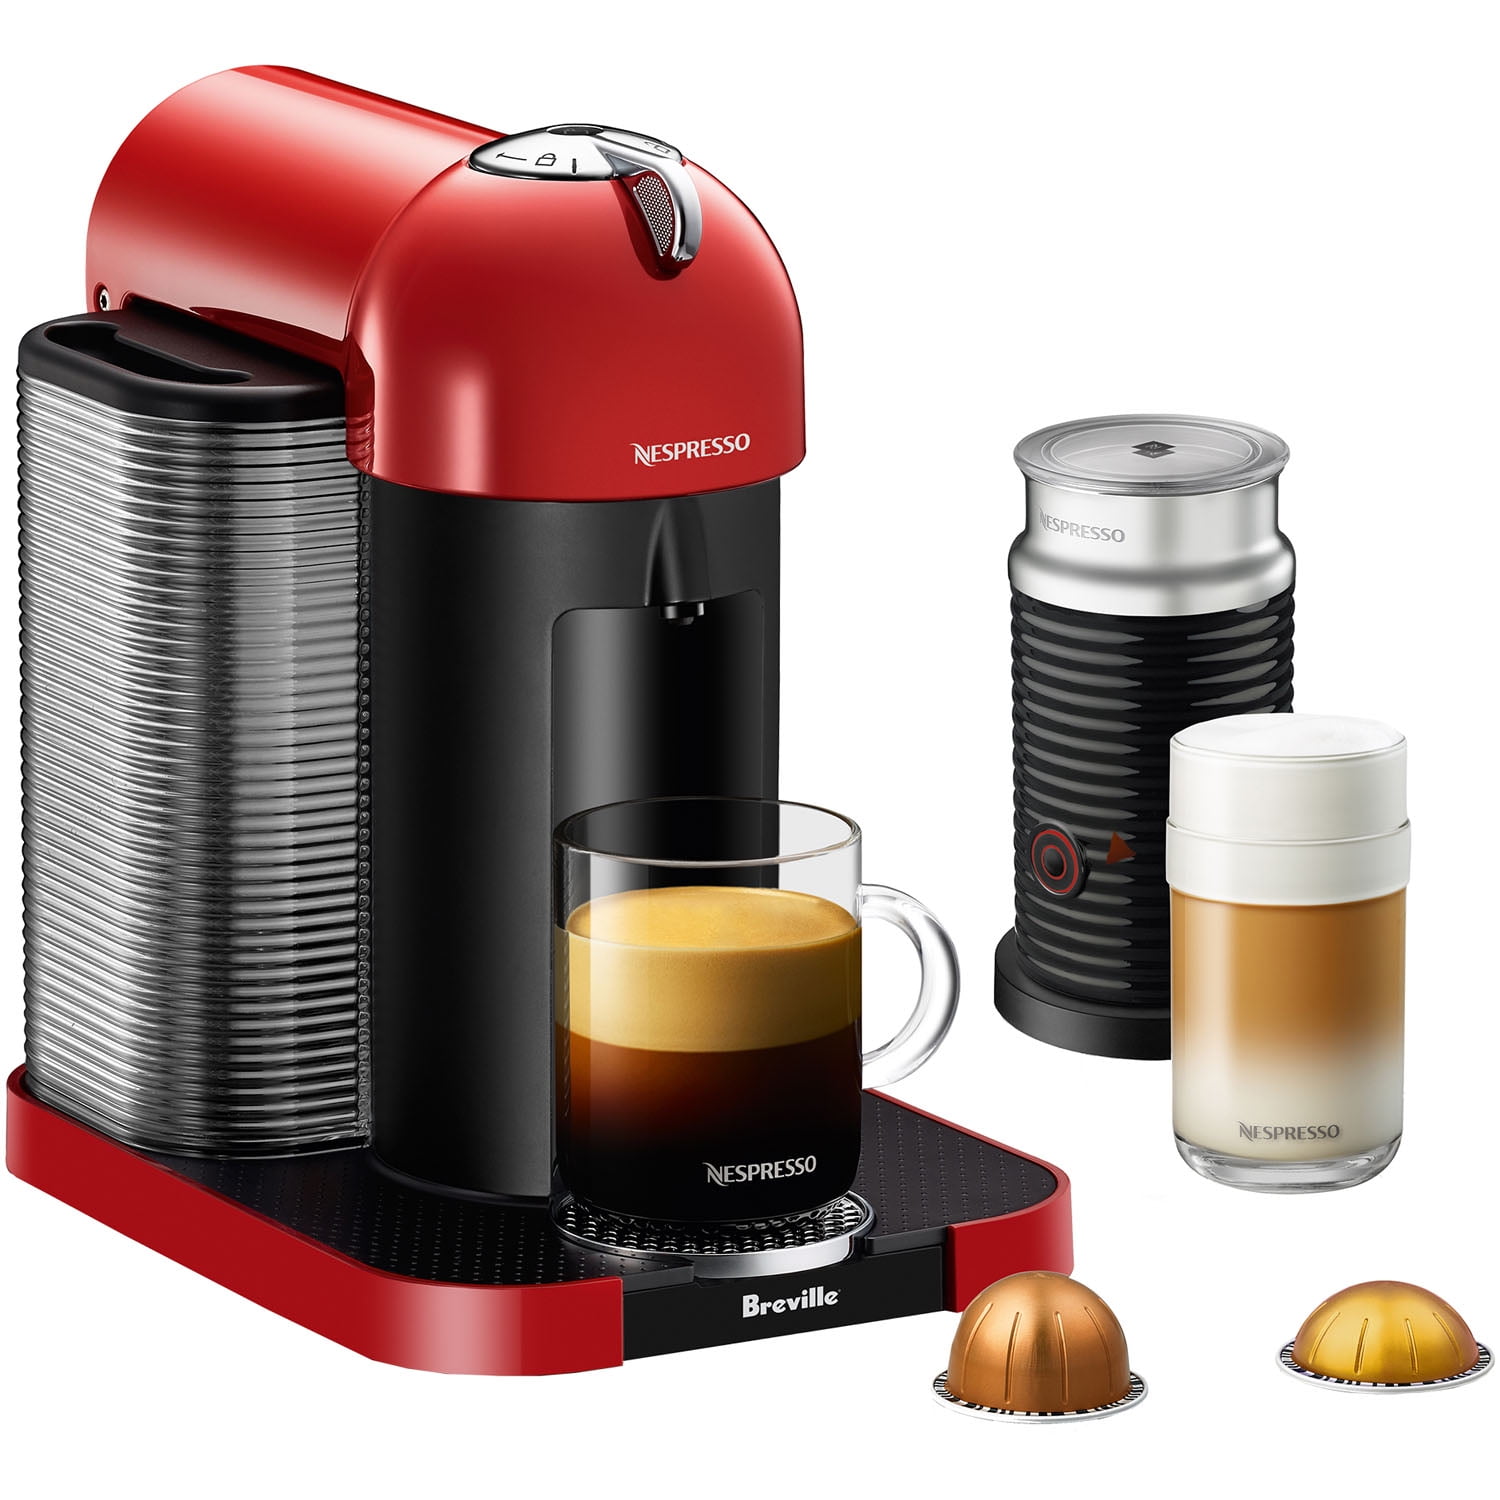 Breville Nespresso Coffee & Espresso Machine in Chrome and Milk Frother in Black - Walmart.com